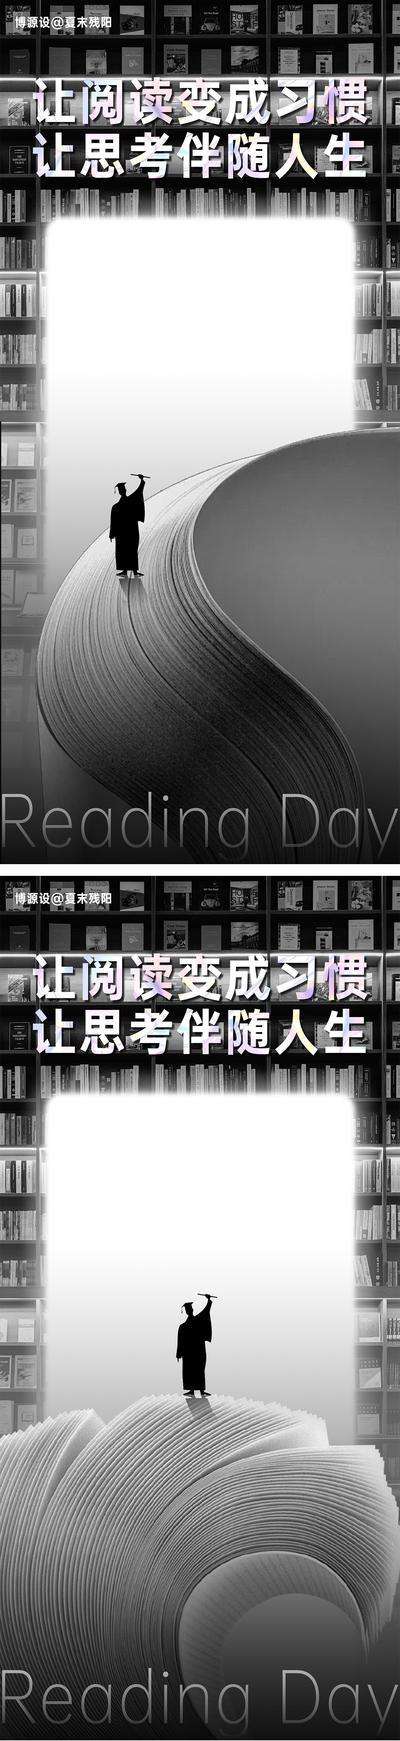 南门网 广告 海报 公历节日 世界读书日 书籍 书架 图书馆 阅读 思考 读书 学习 简约 黑白灰 高级 书脊